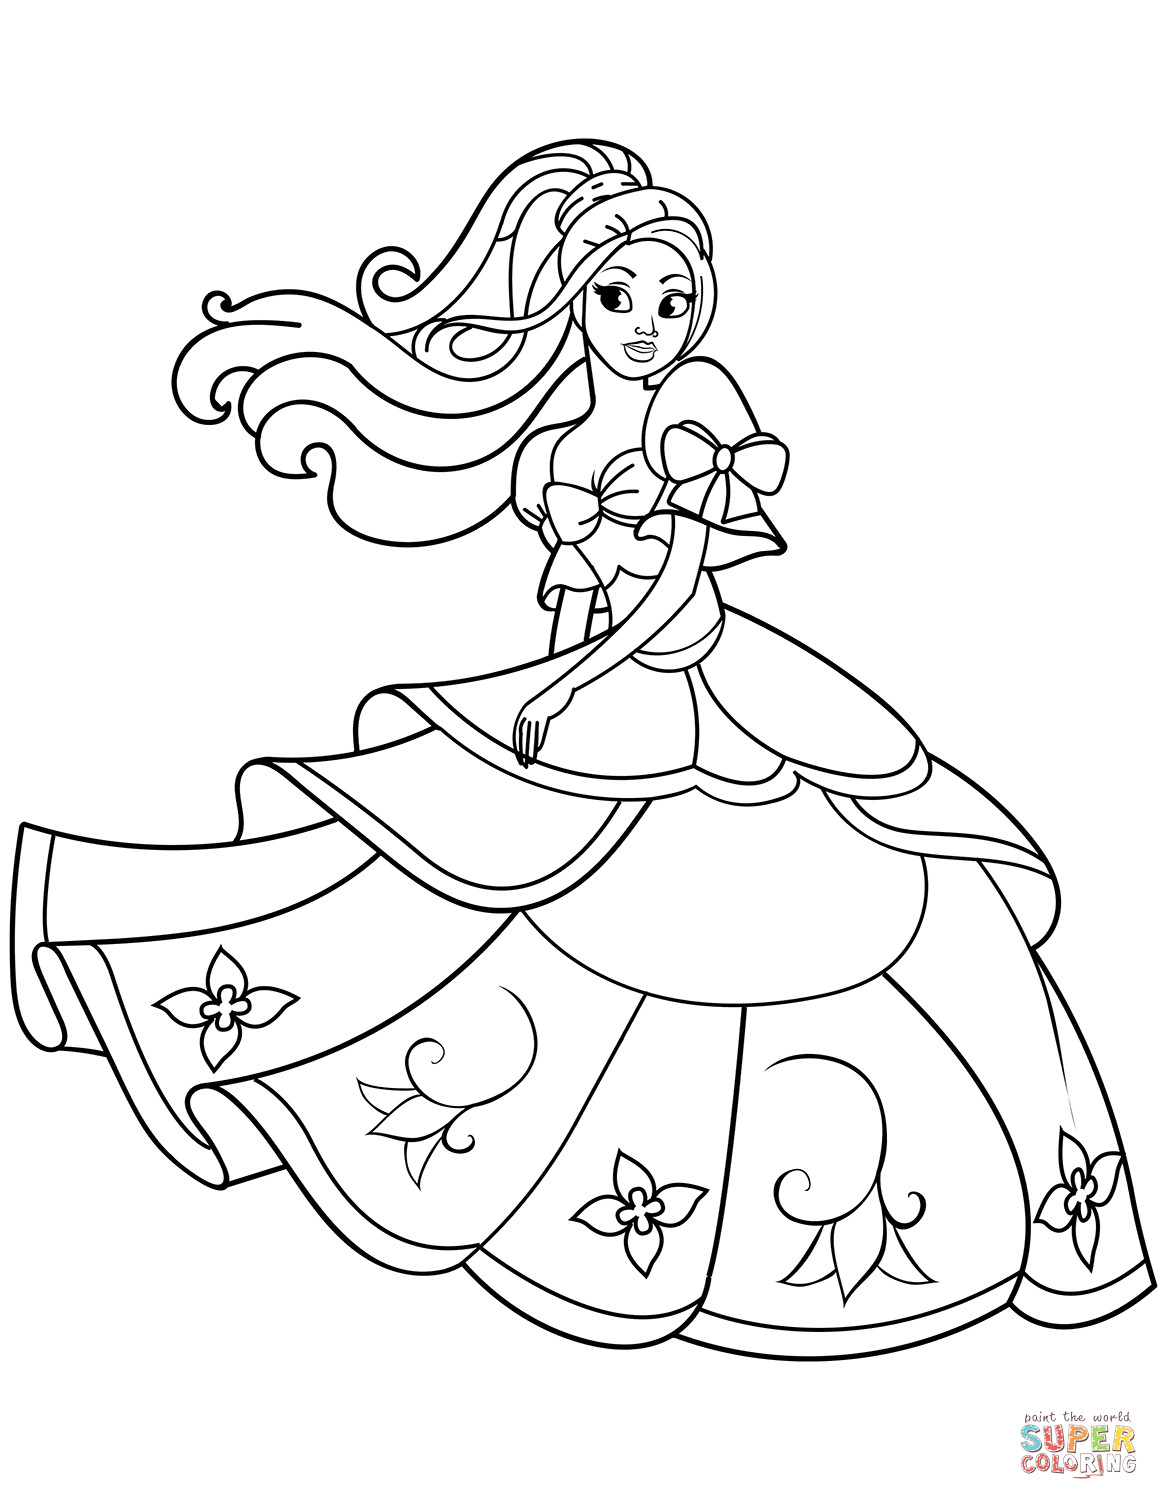 Printing Princess Coloring Pages
 Dancing Princess coloring page